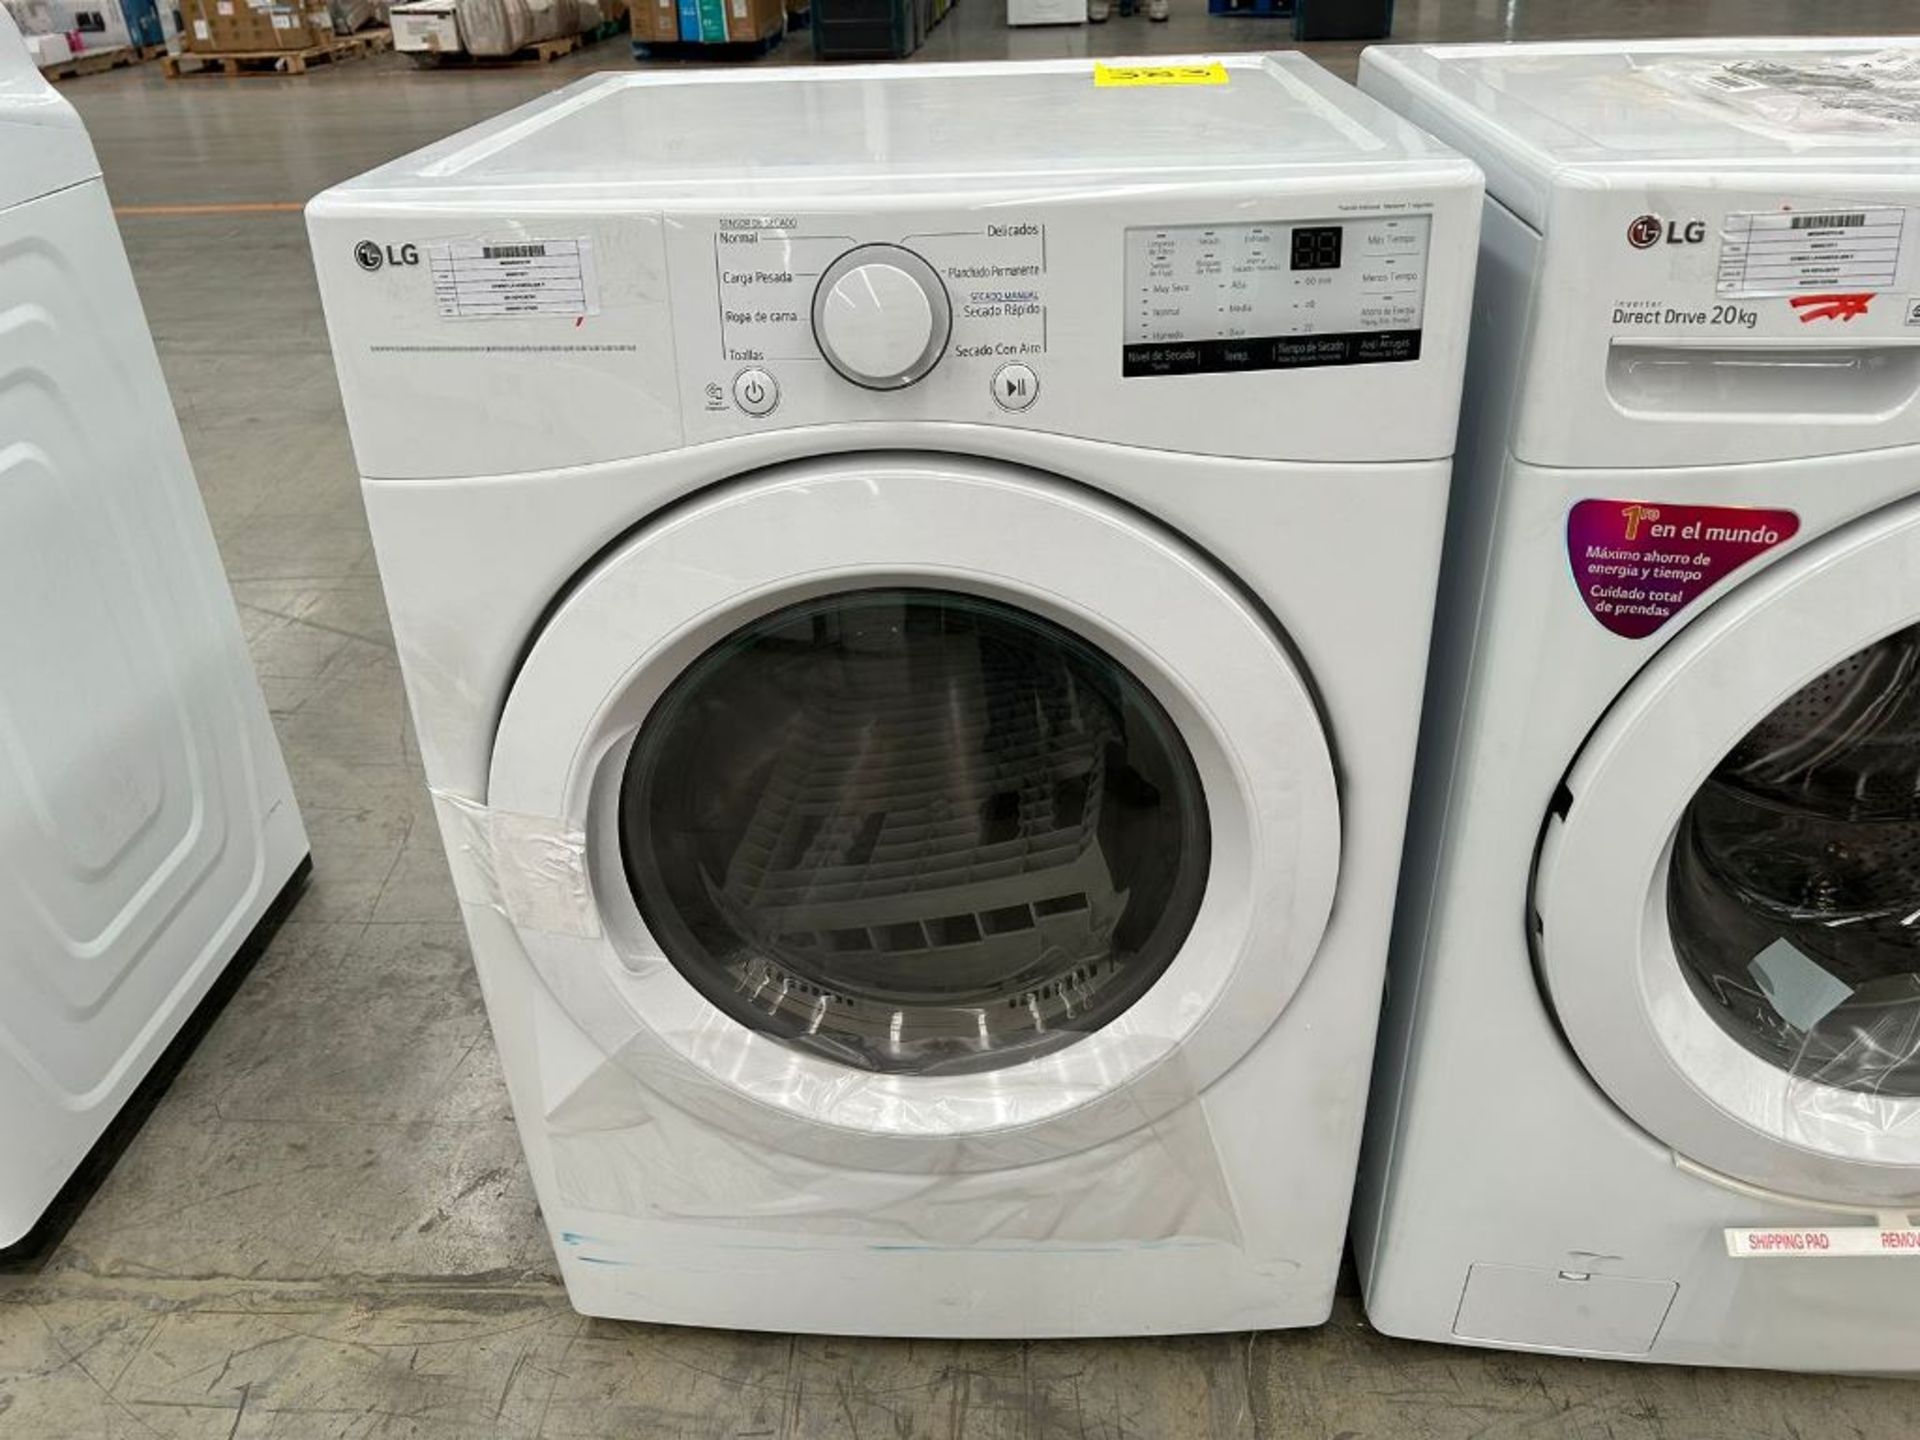 Lote de 1 Lavadora Y 1 secadora contiene: 1 lavadora de 20 Kg Marca LG, Modelo WM20WV26W, Serie k29 - Image 5 of 6